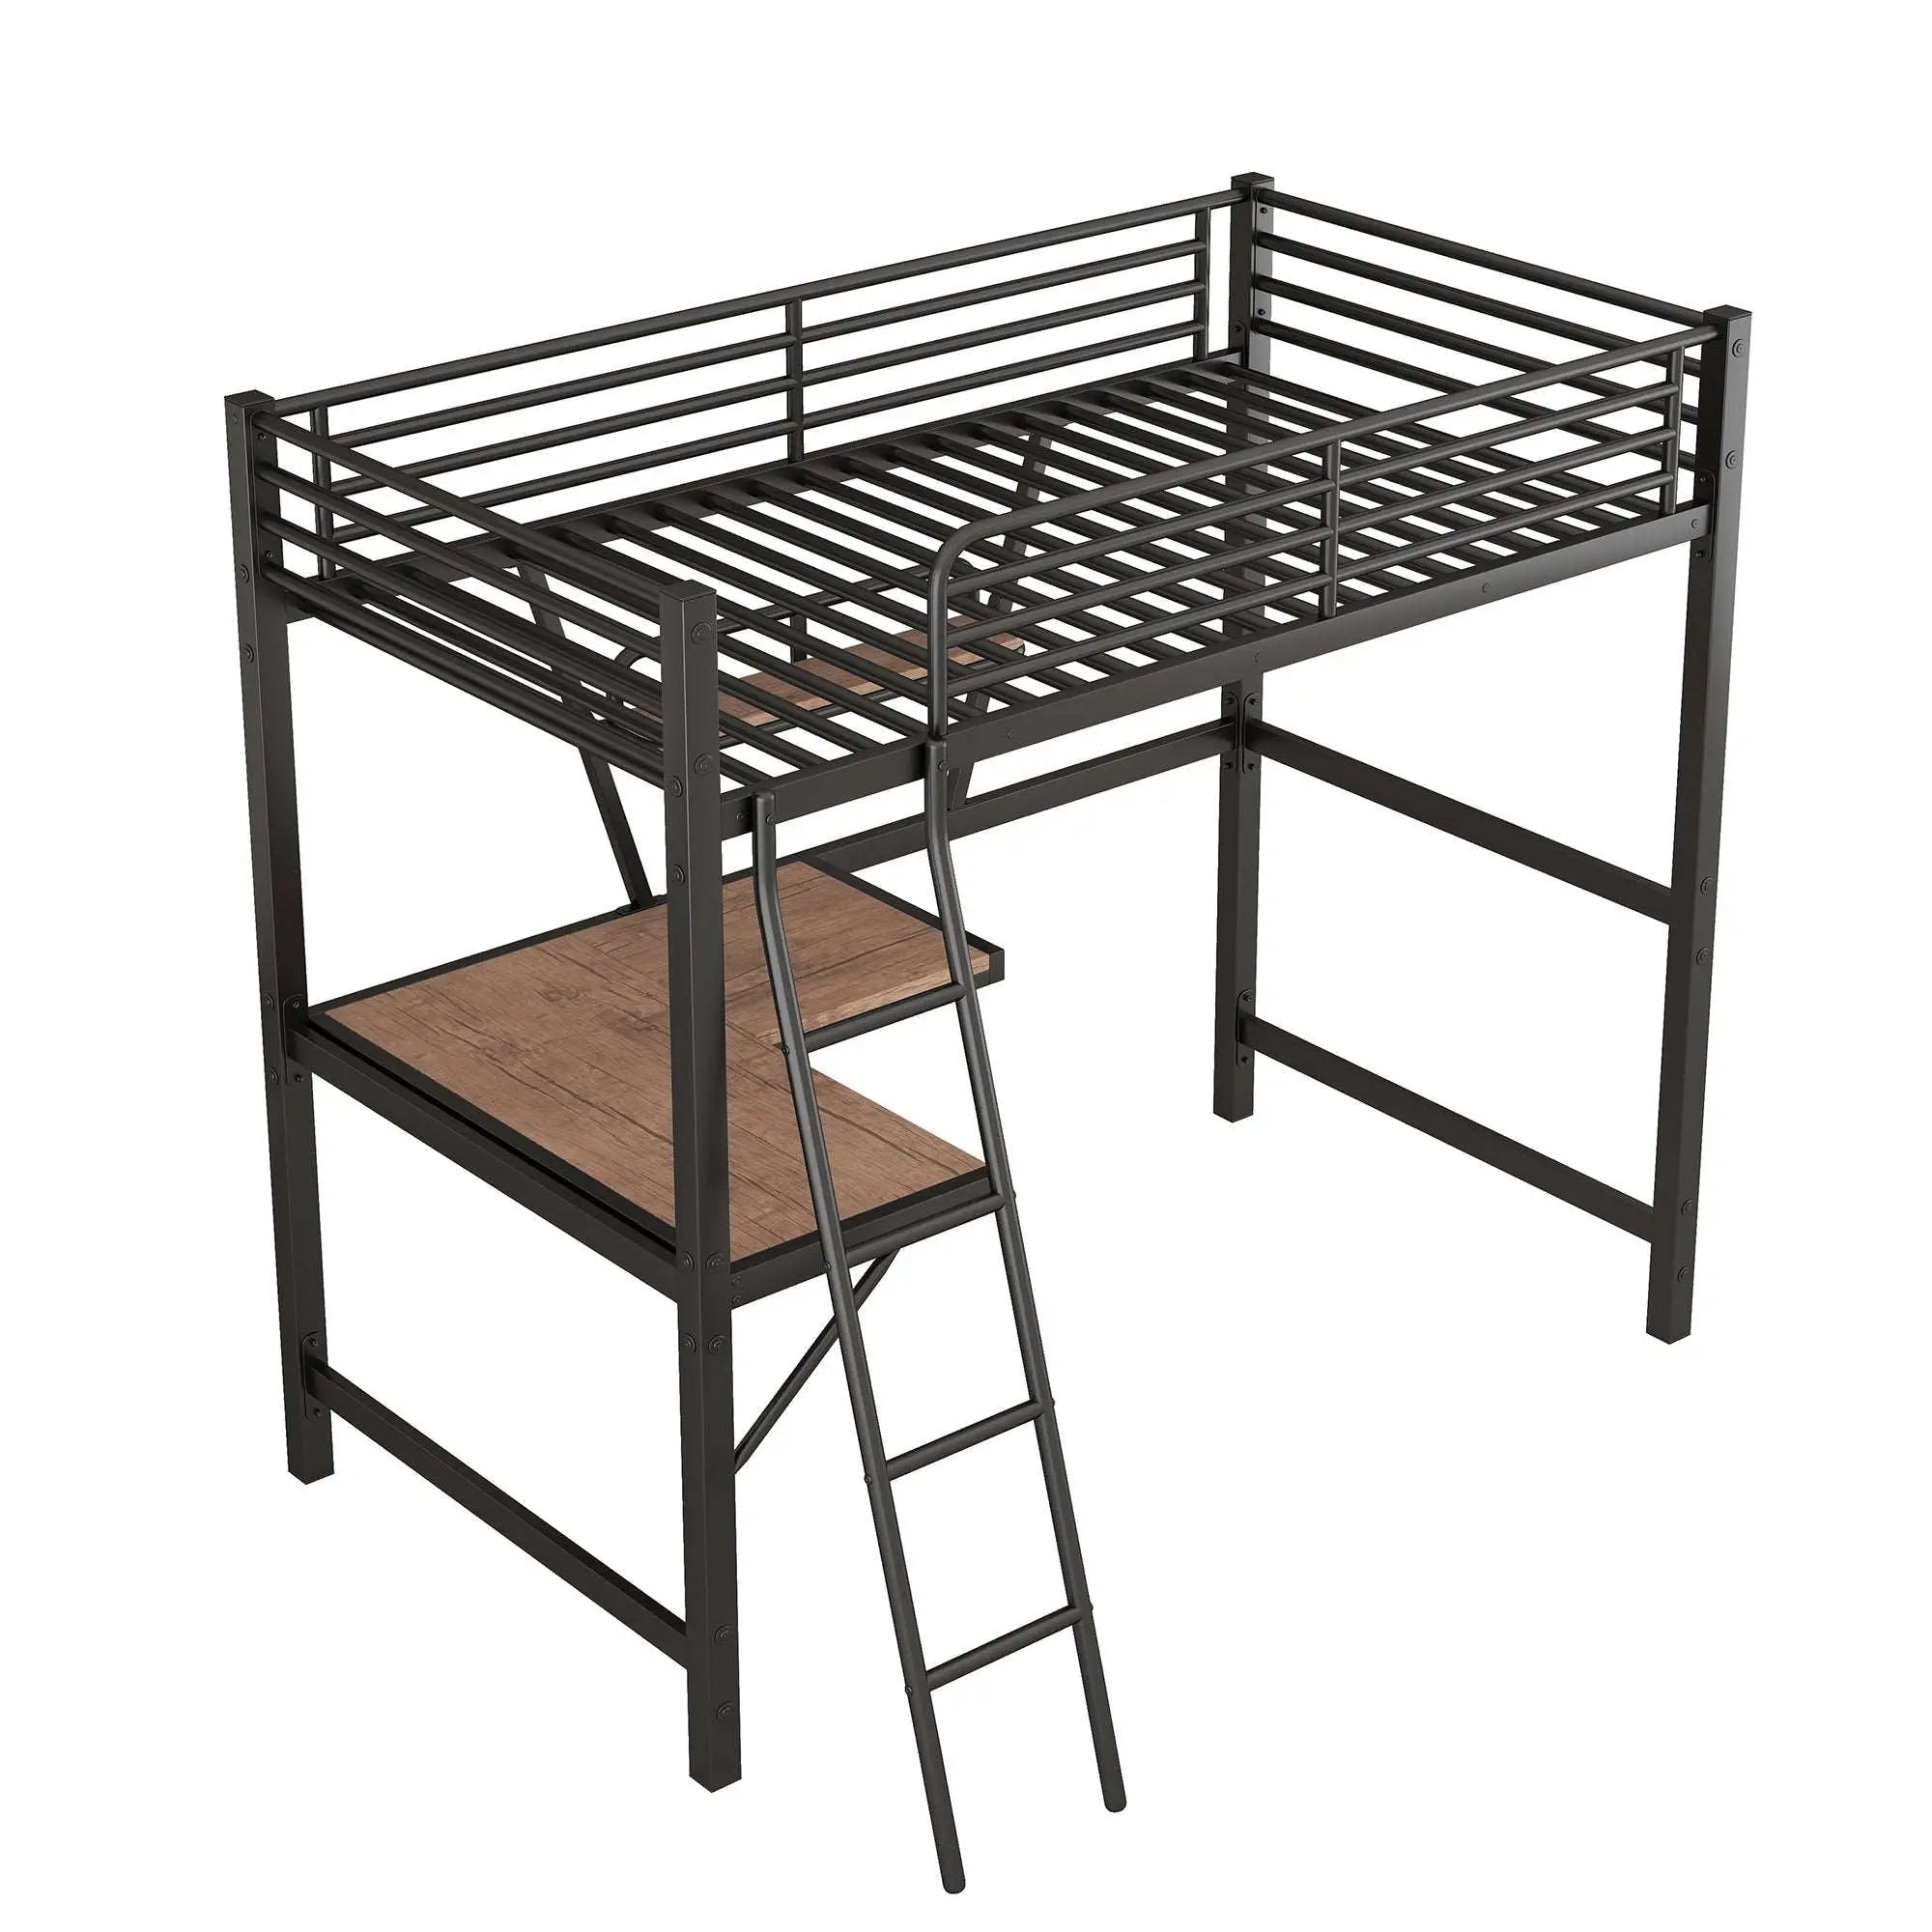 Bellemave High Loft Metal&MDF Bed with Desk and Shelf